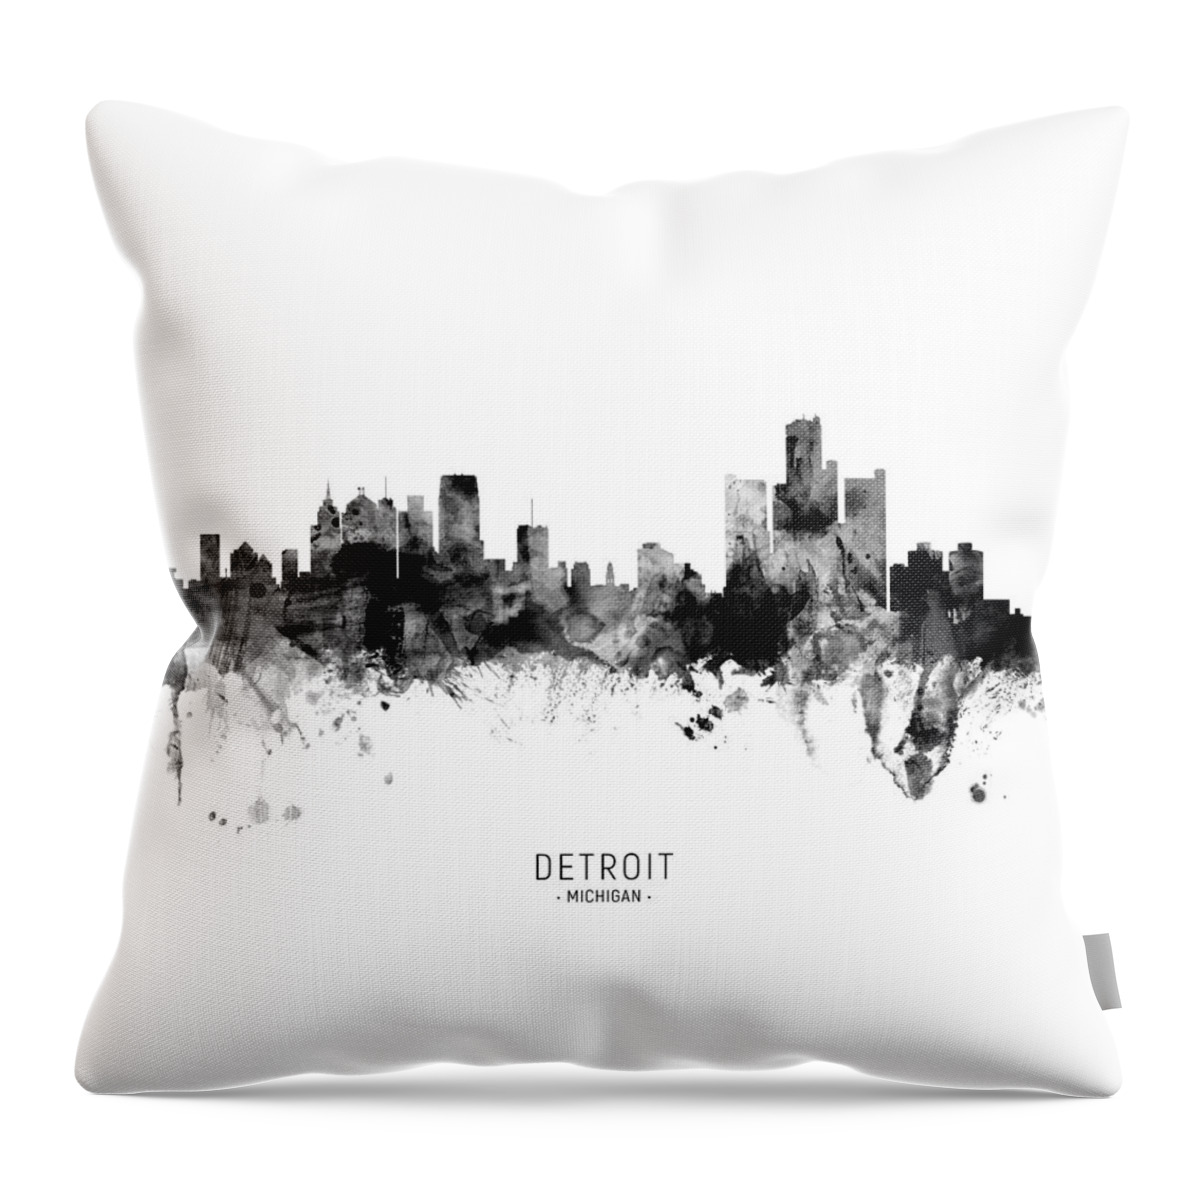 Detroit Throw Pillow featuring the digital art Detroit Michigan Skyline #24 by Michael Tompsett